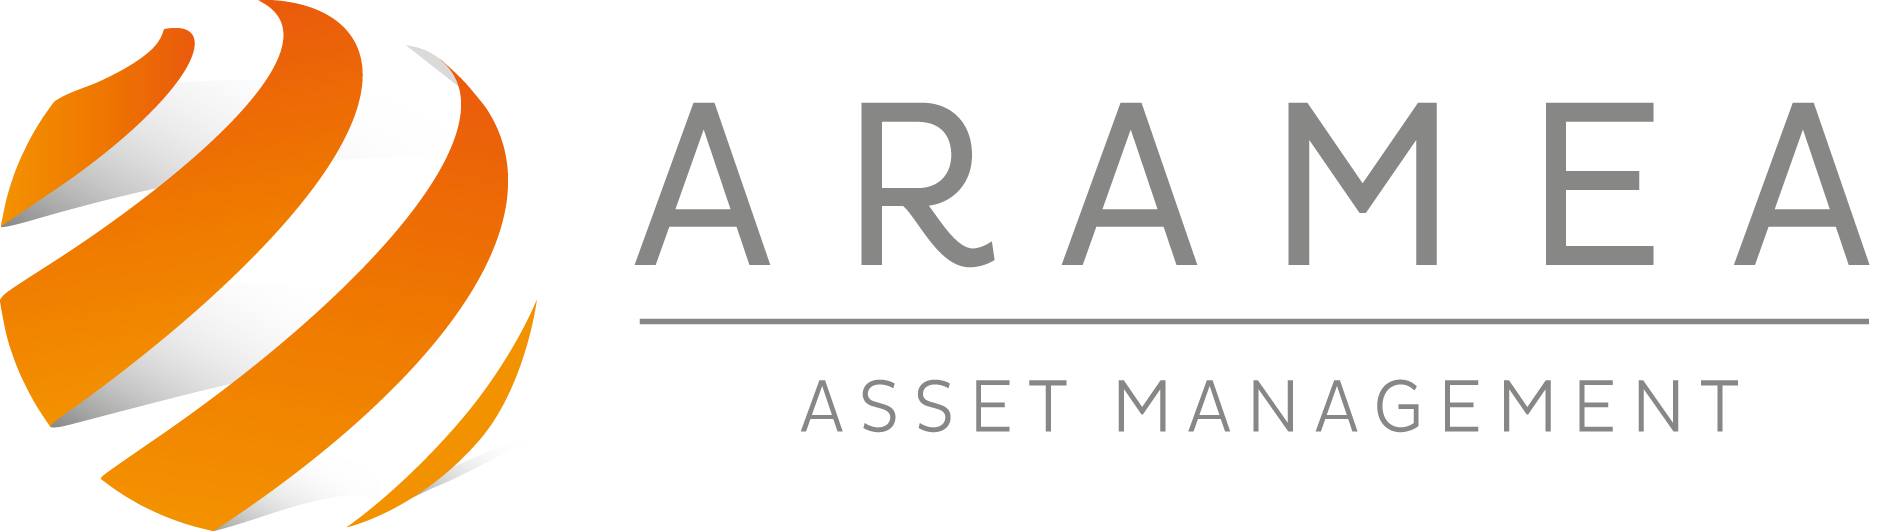 ARAMEA Asset Management